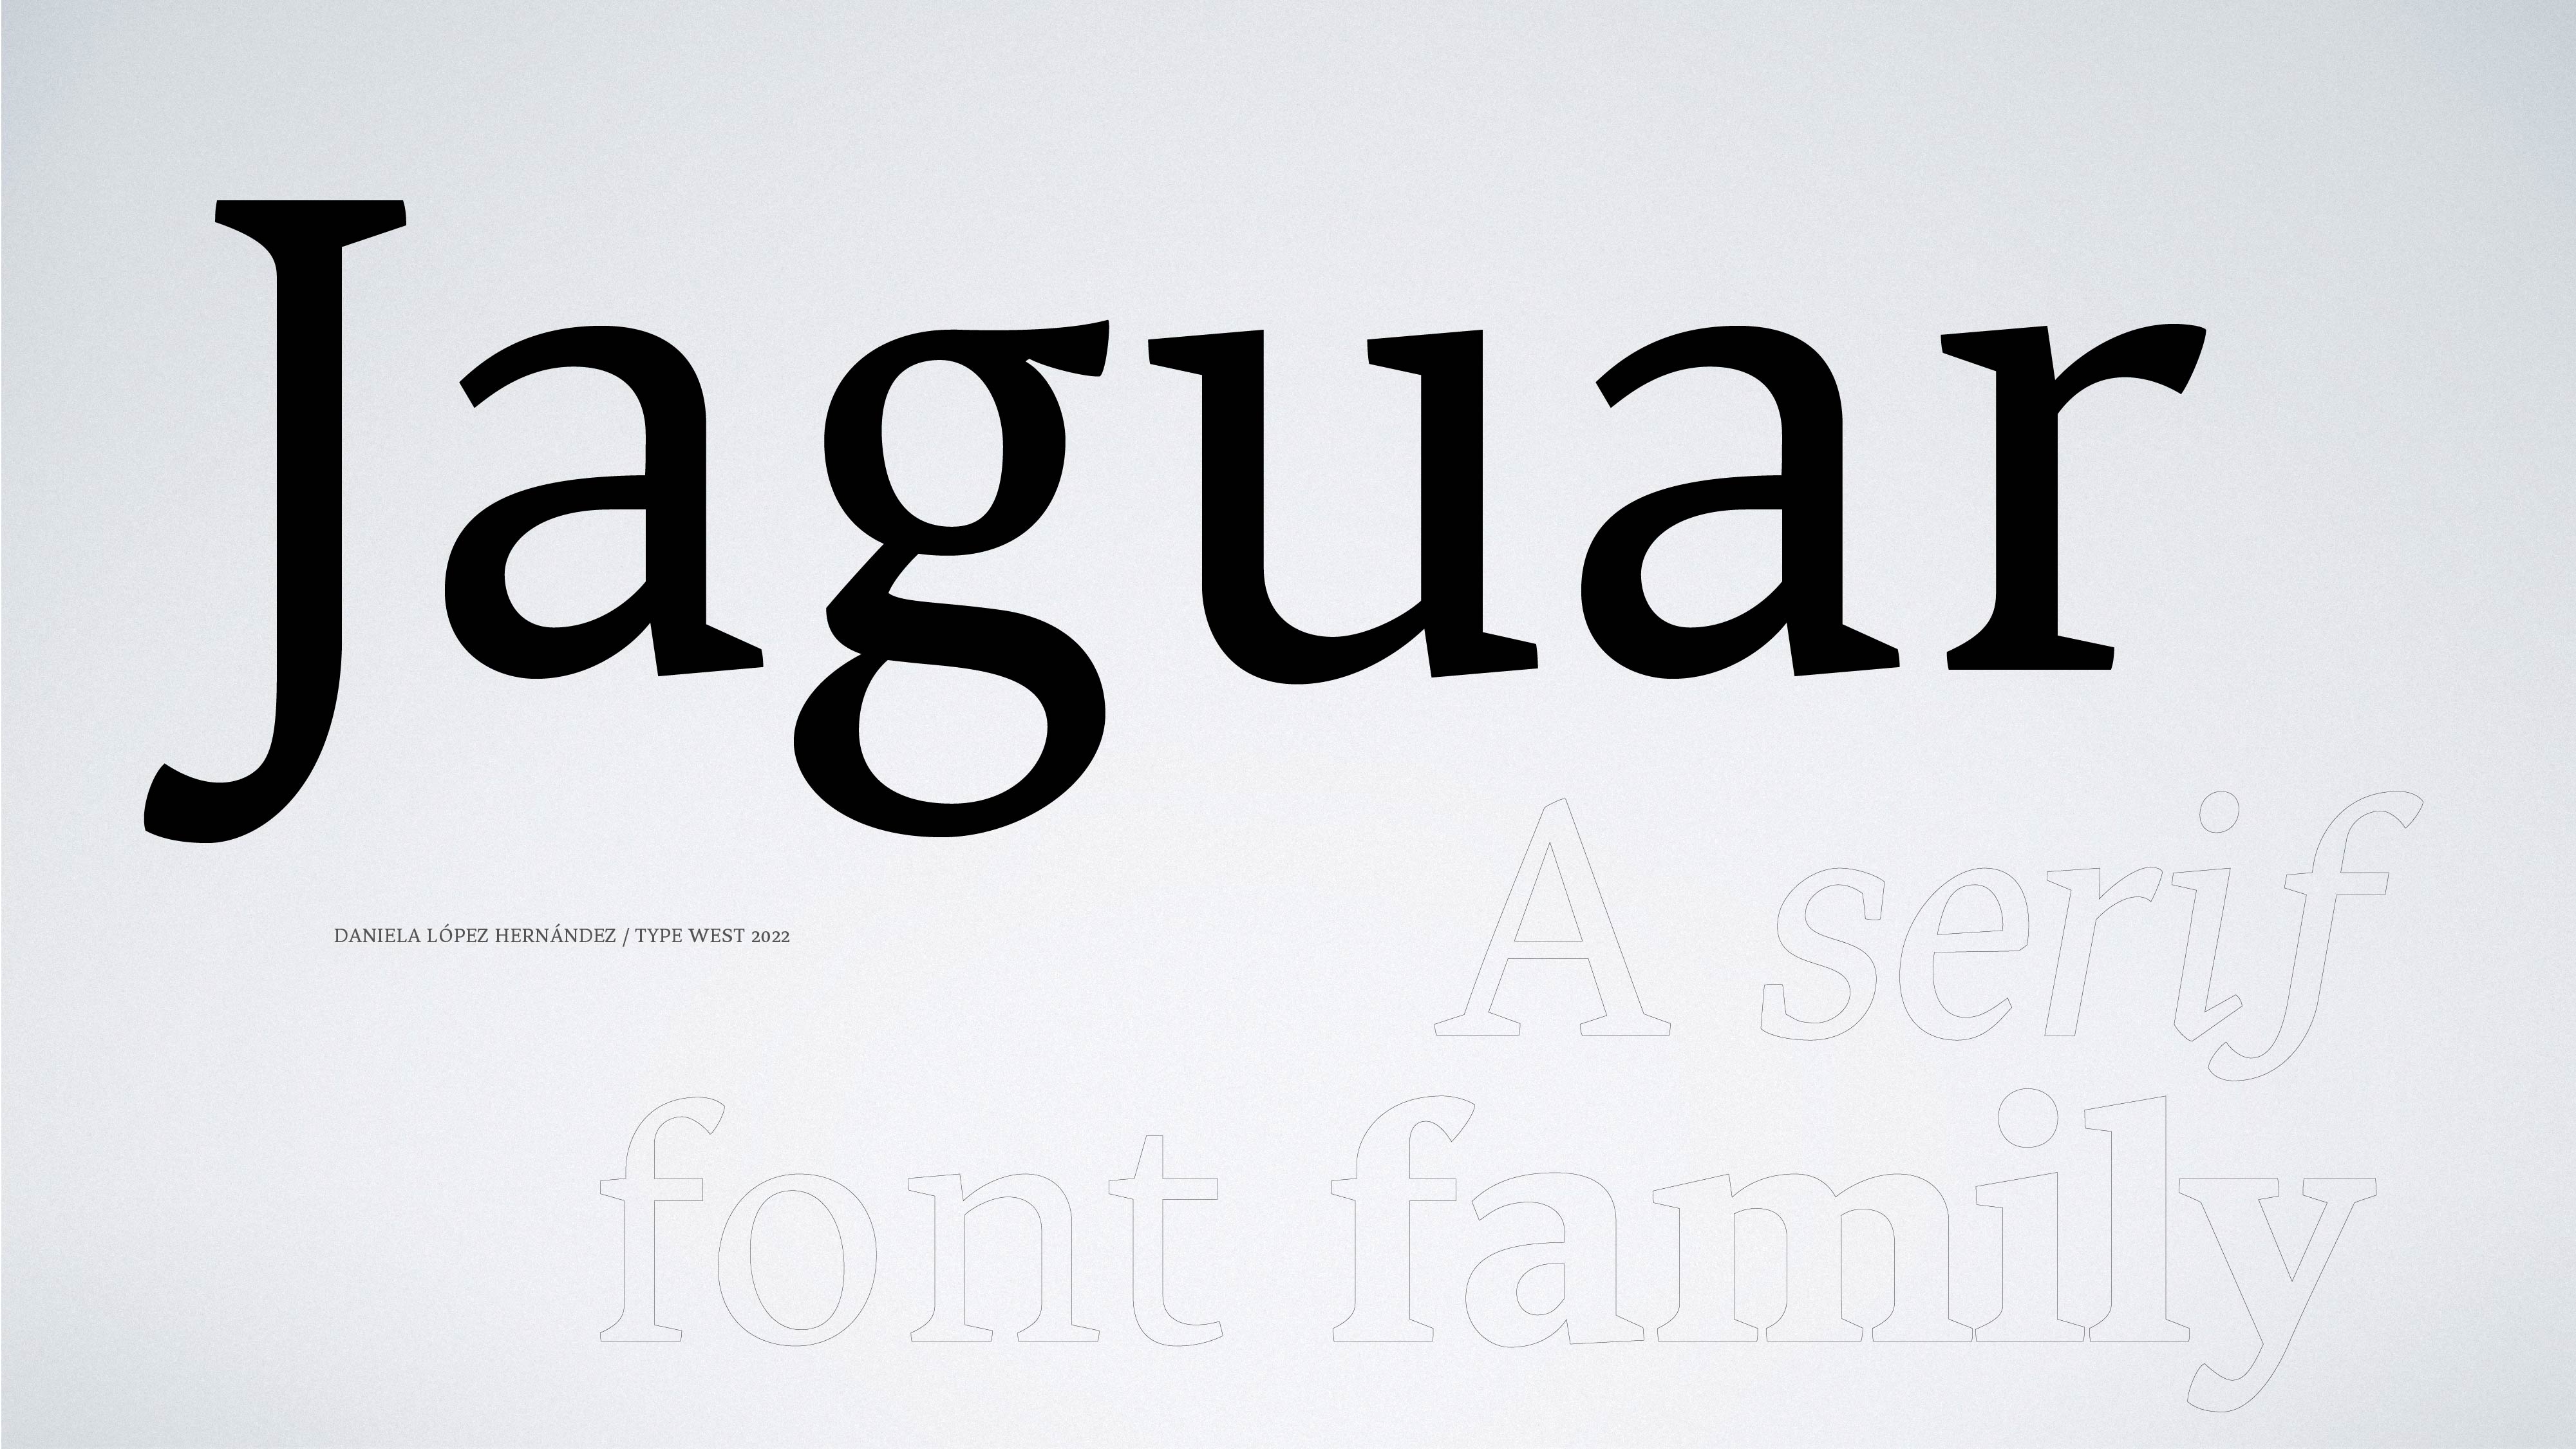 Type West's final project, an original typeface: a serif font family named Jaguar by Daniela López.